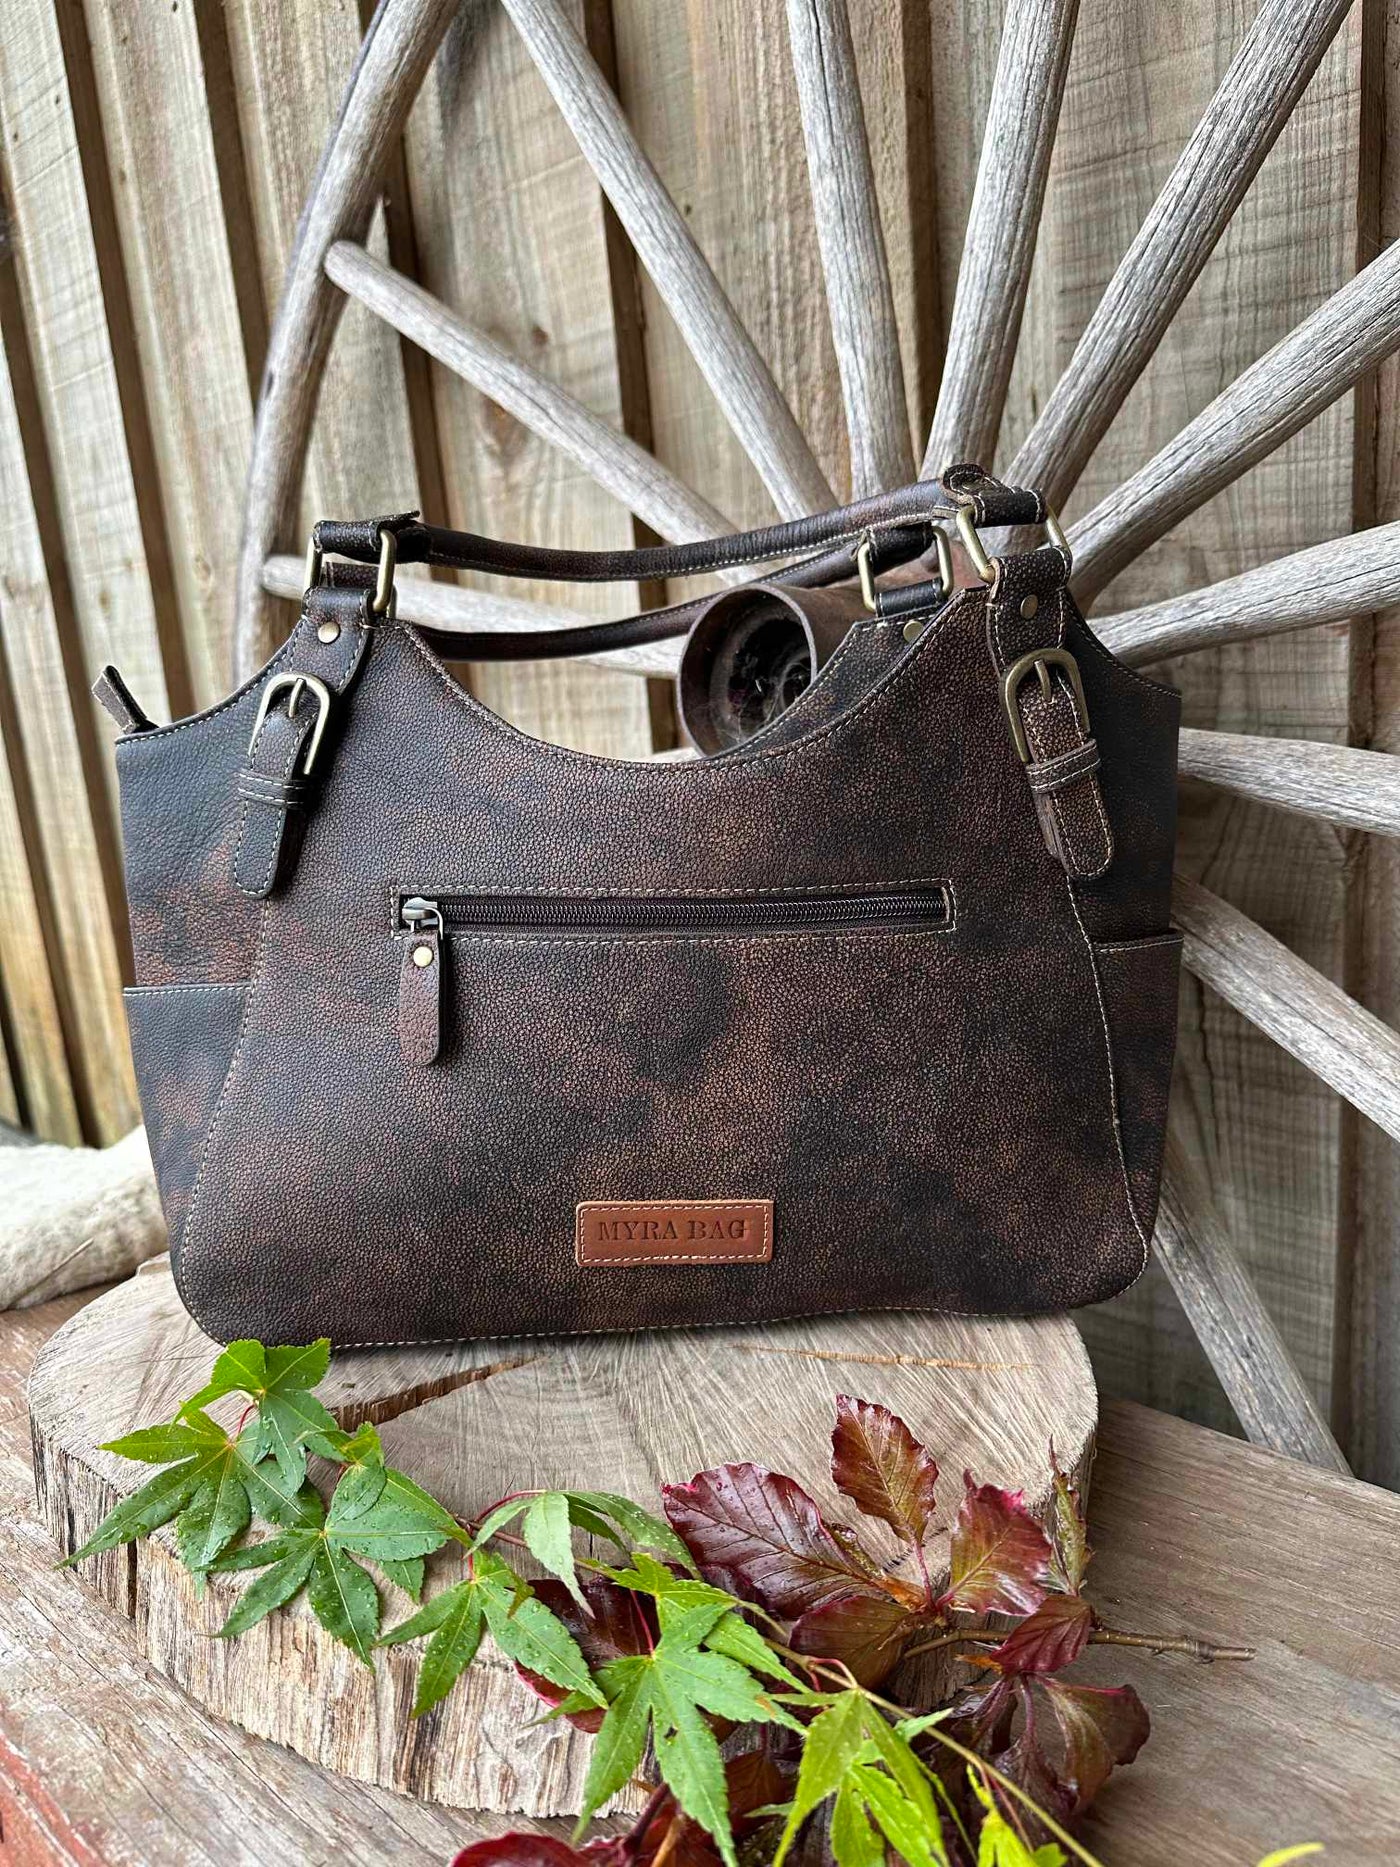 Western Leather Genuine Tooled Tote Handbag